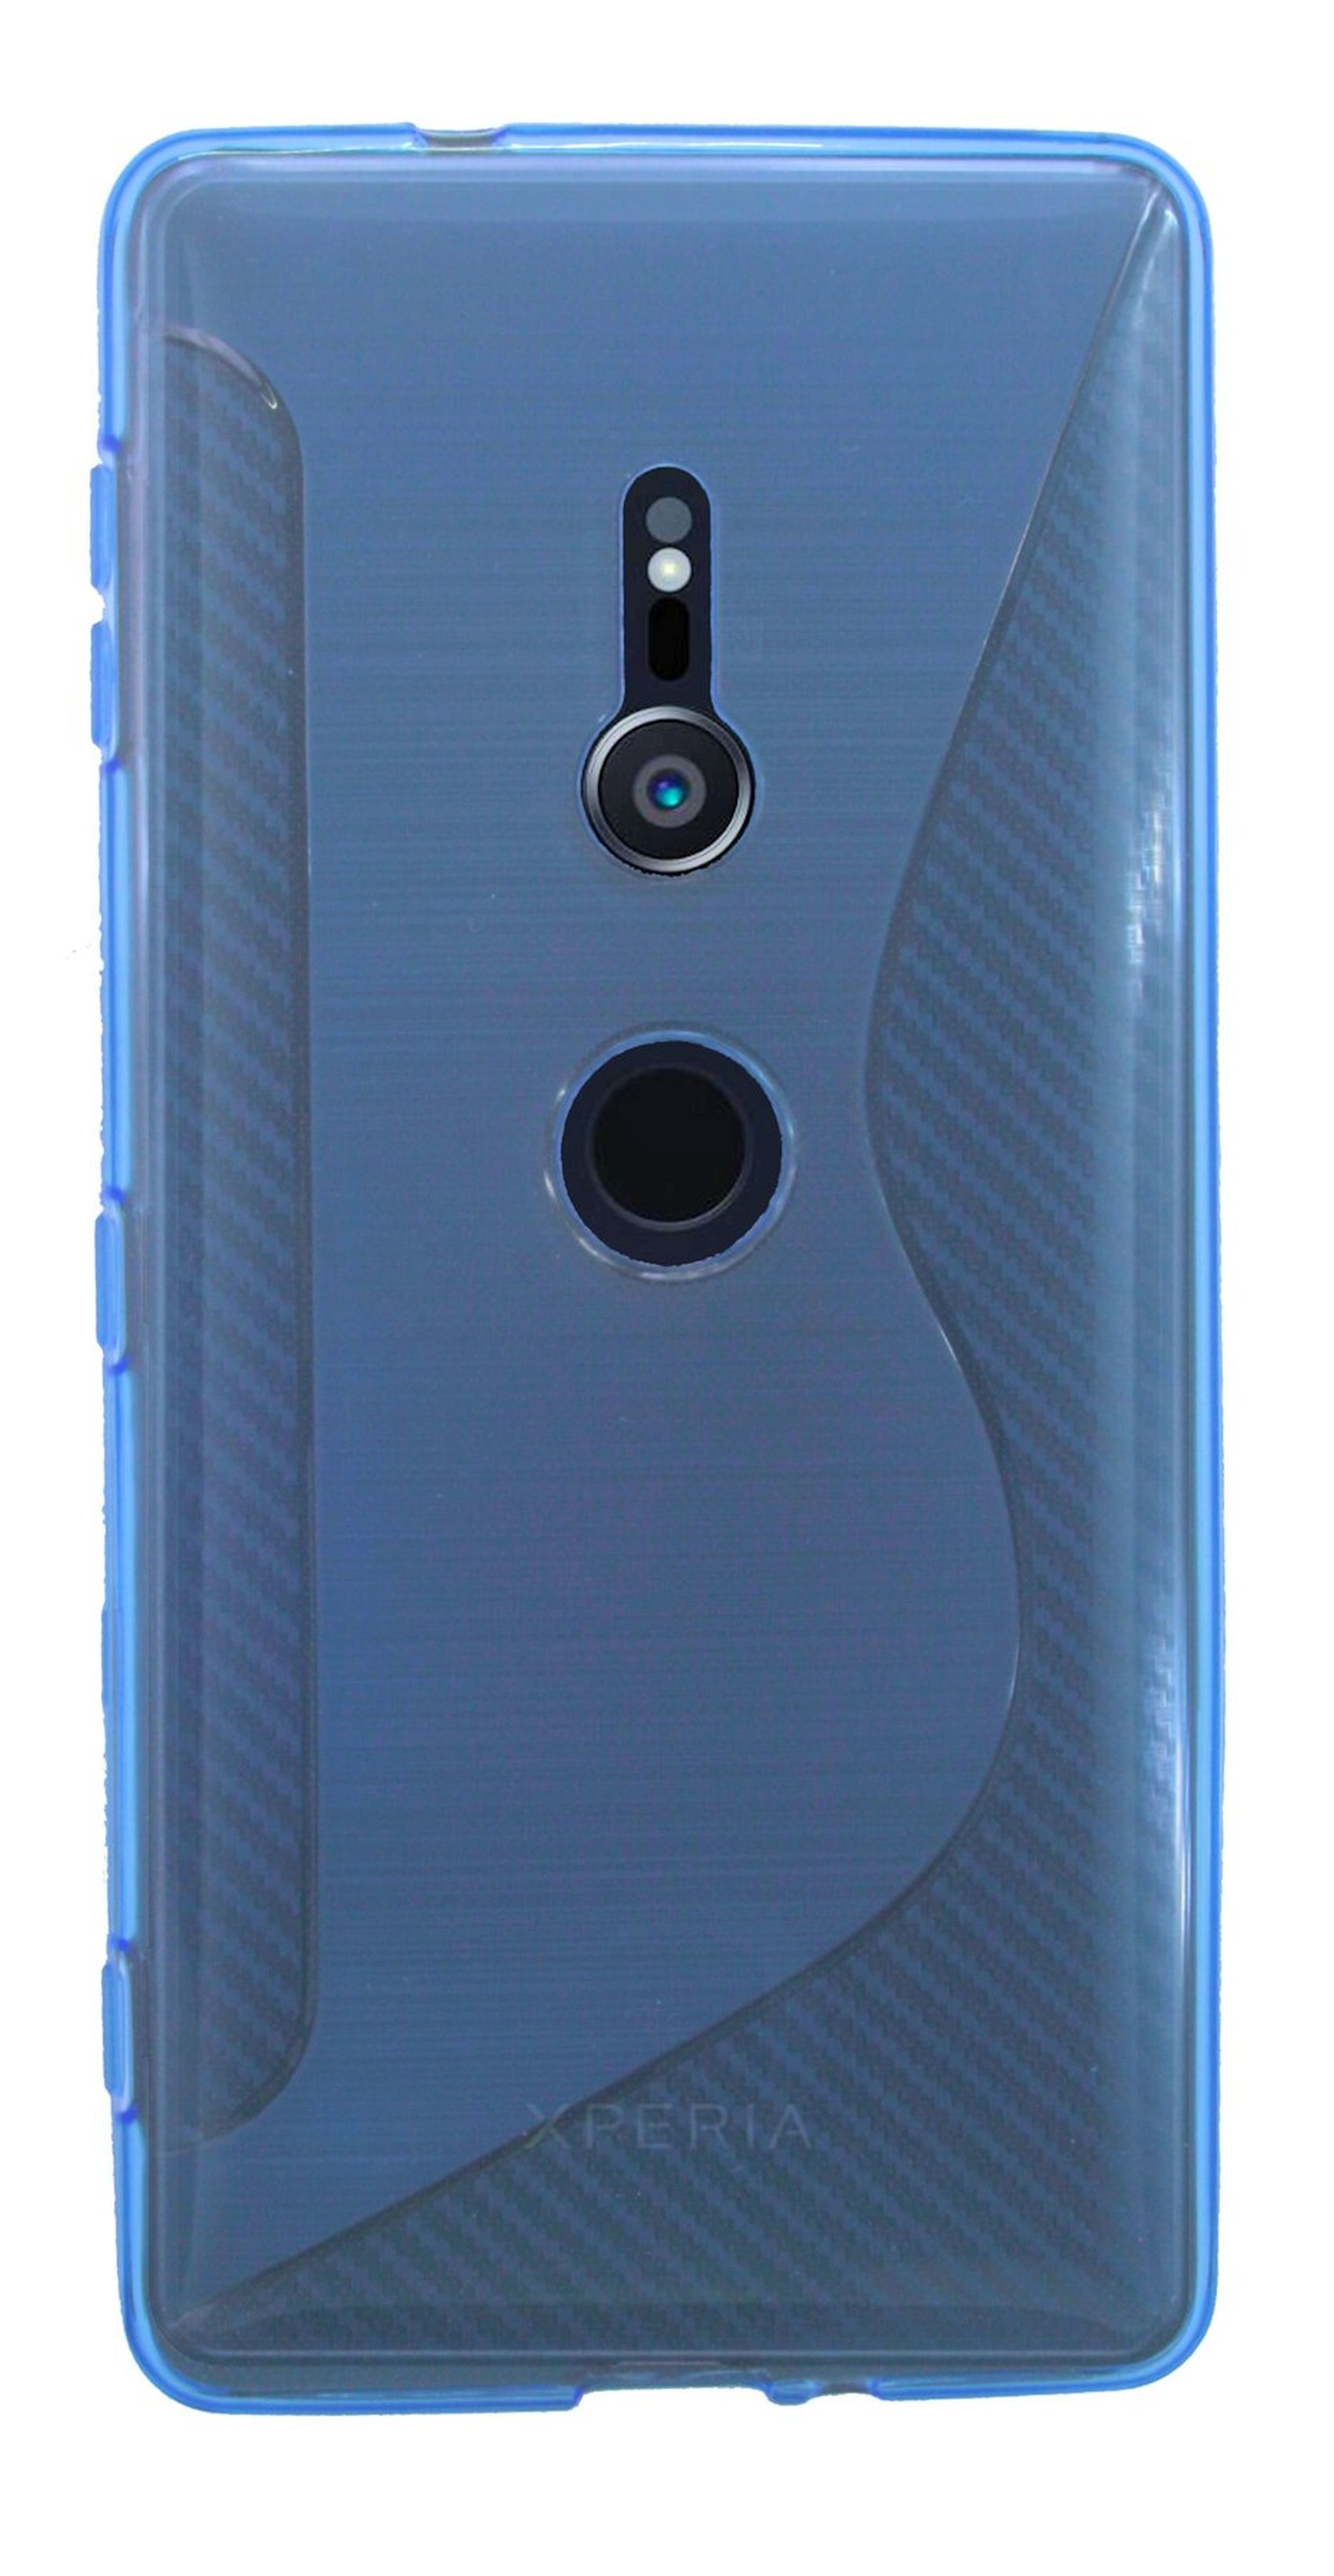 COFI S-Line Xperia Blau Bumper, Cover, XZ2, Sony